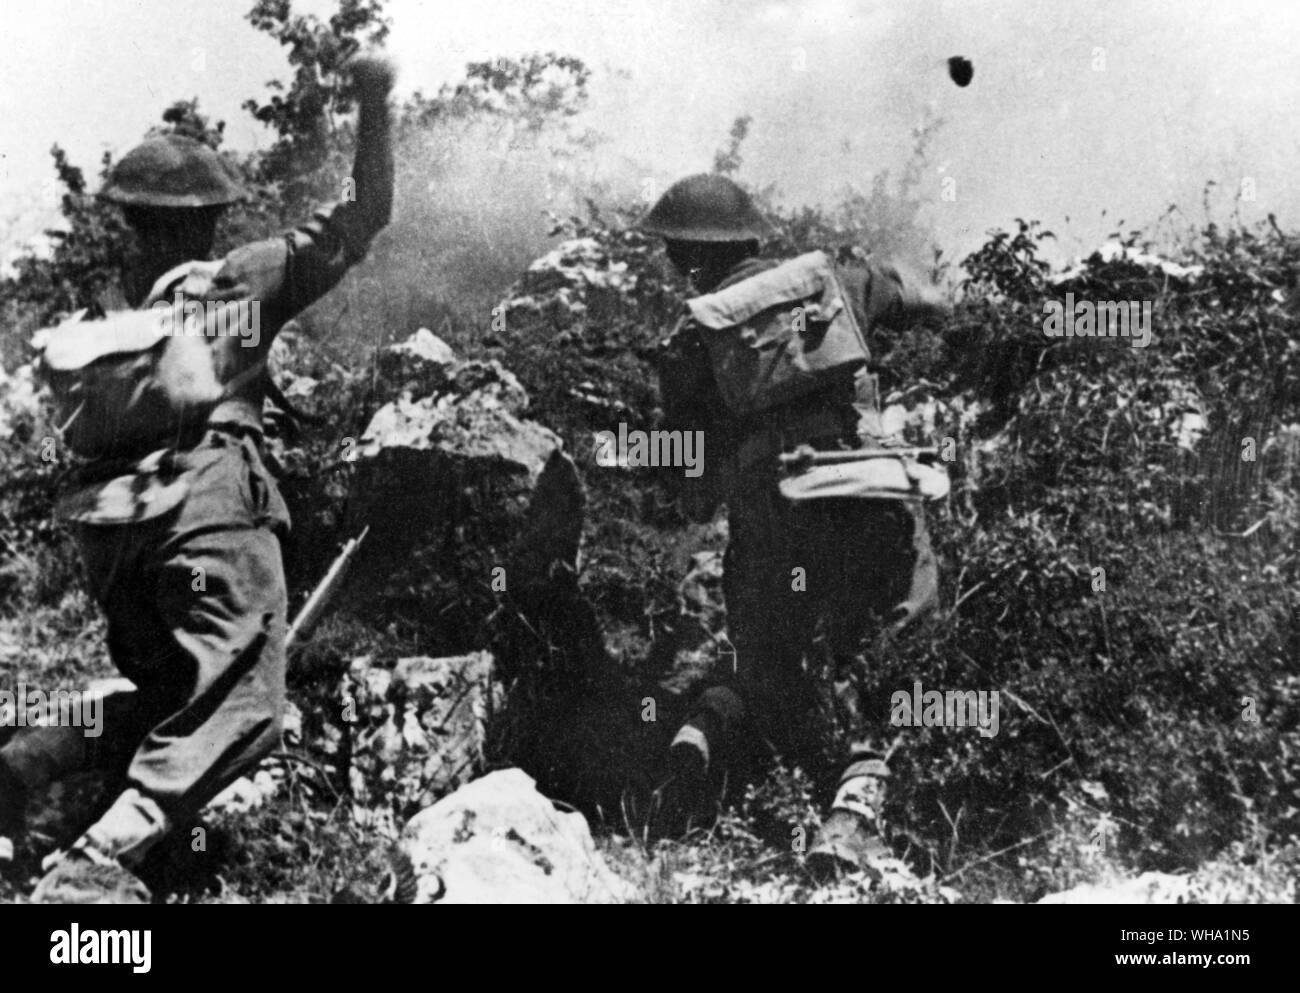 WW2: polnische Truppen in Aktion auf dem Monte Cassino. Werfen Bomben, Mai 1944. Stockfoto